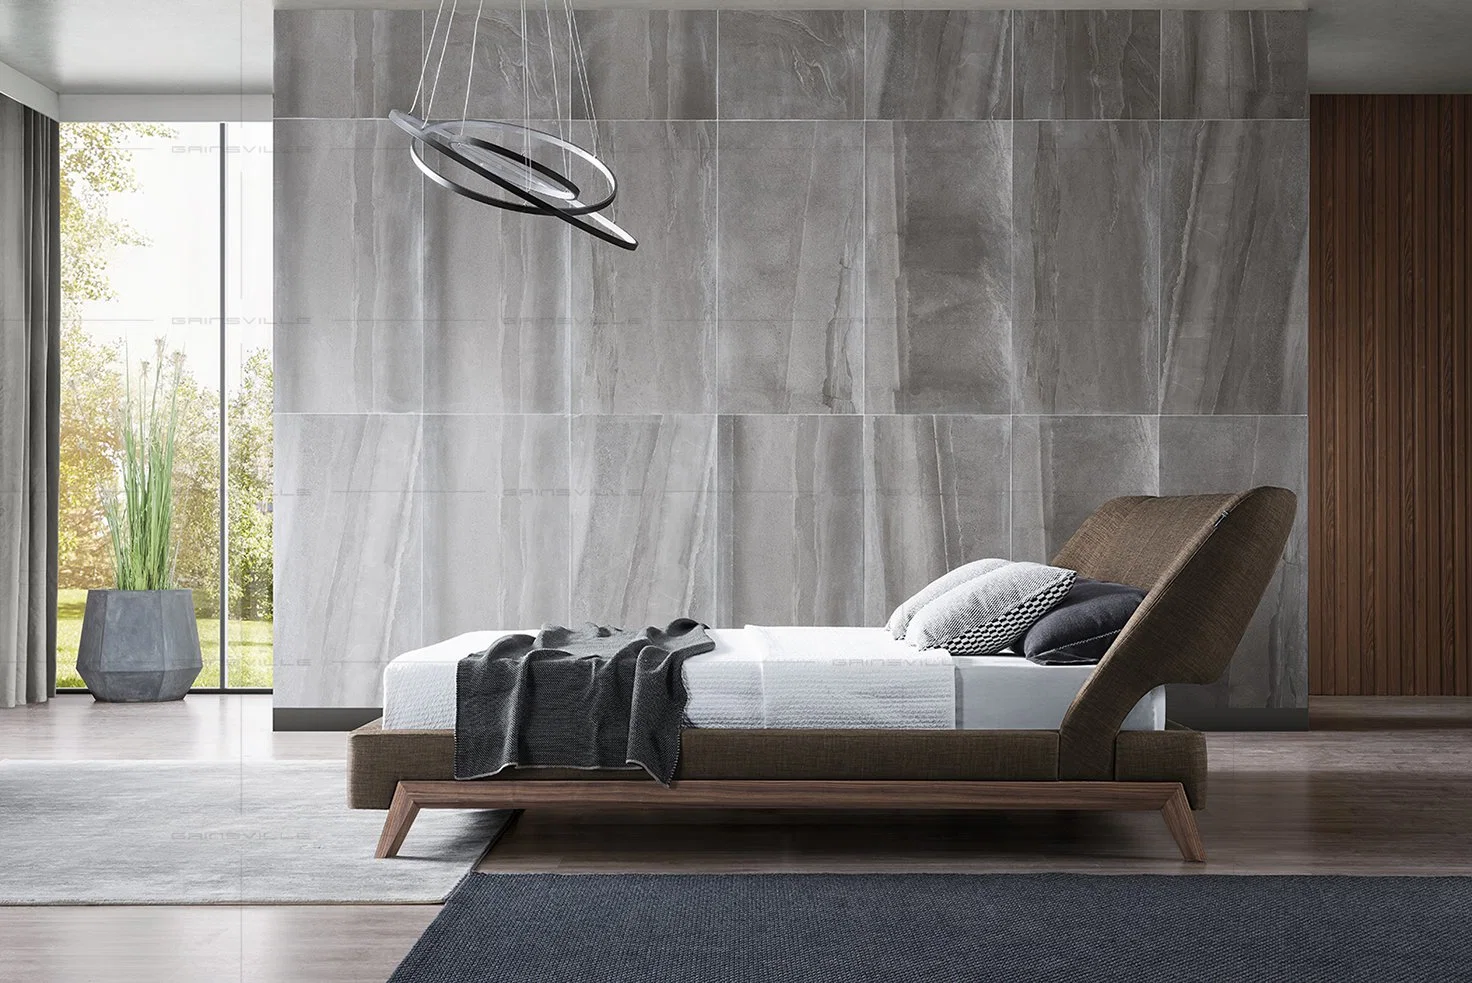 Cama de madera de la pared al por mayor de la cama King Size cama tapizados modernos muebles